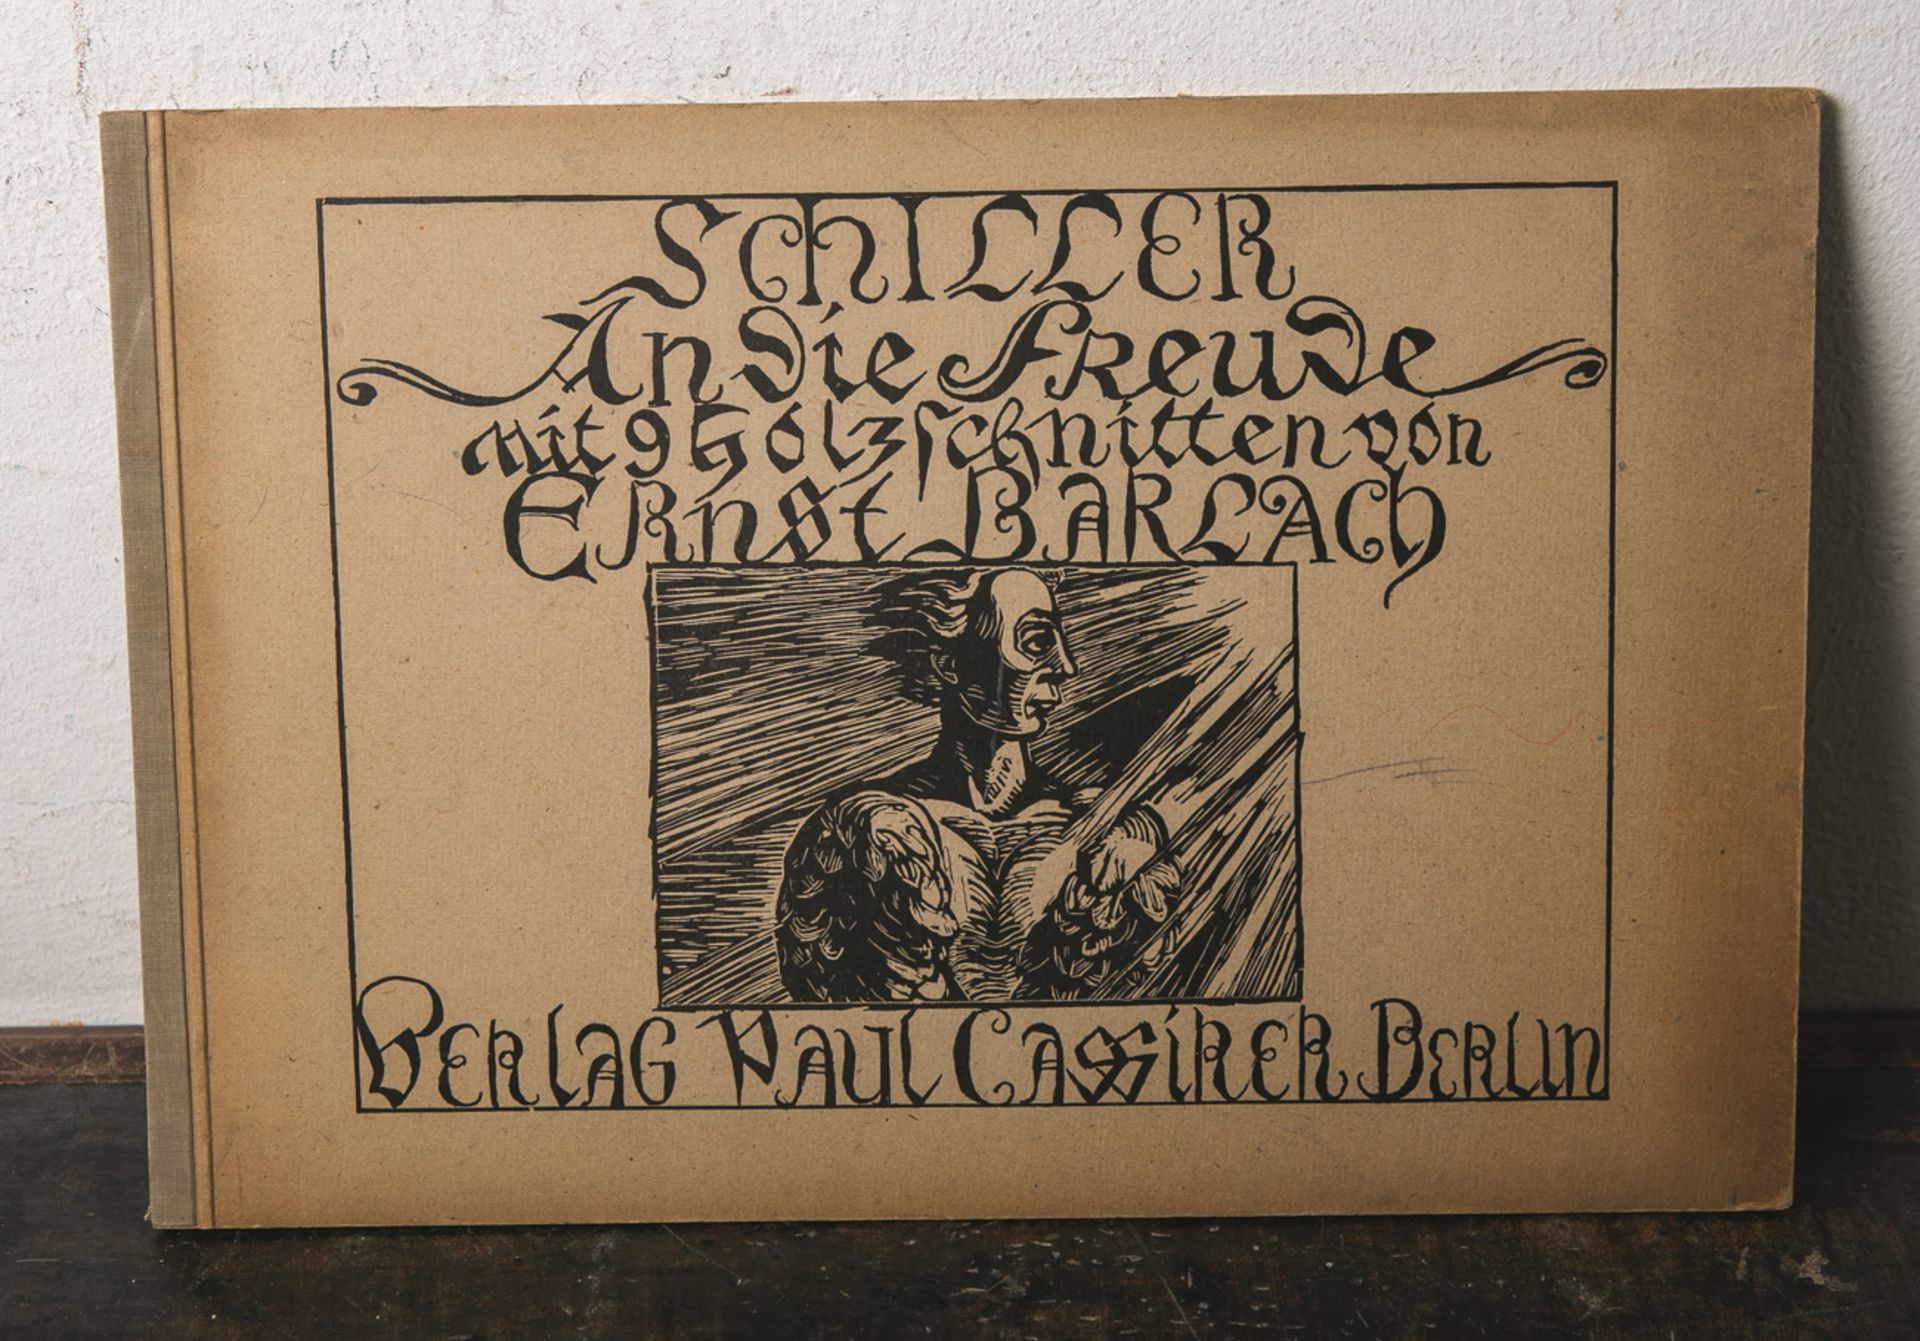 "Schiller-An die Freude-mit 9 Holzschnitten von Ernst Barlach", Verlag Paul CassirerBerlin 1927,